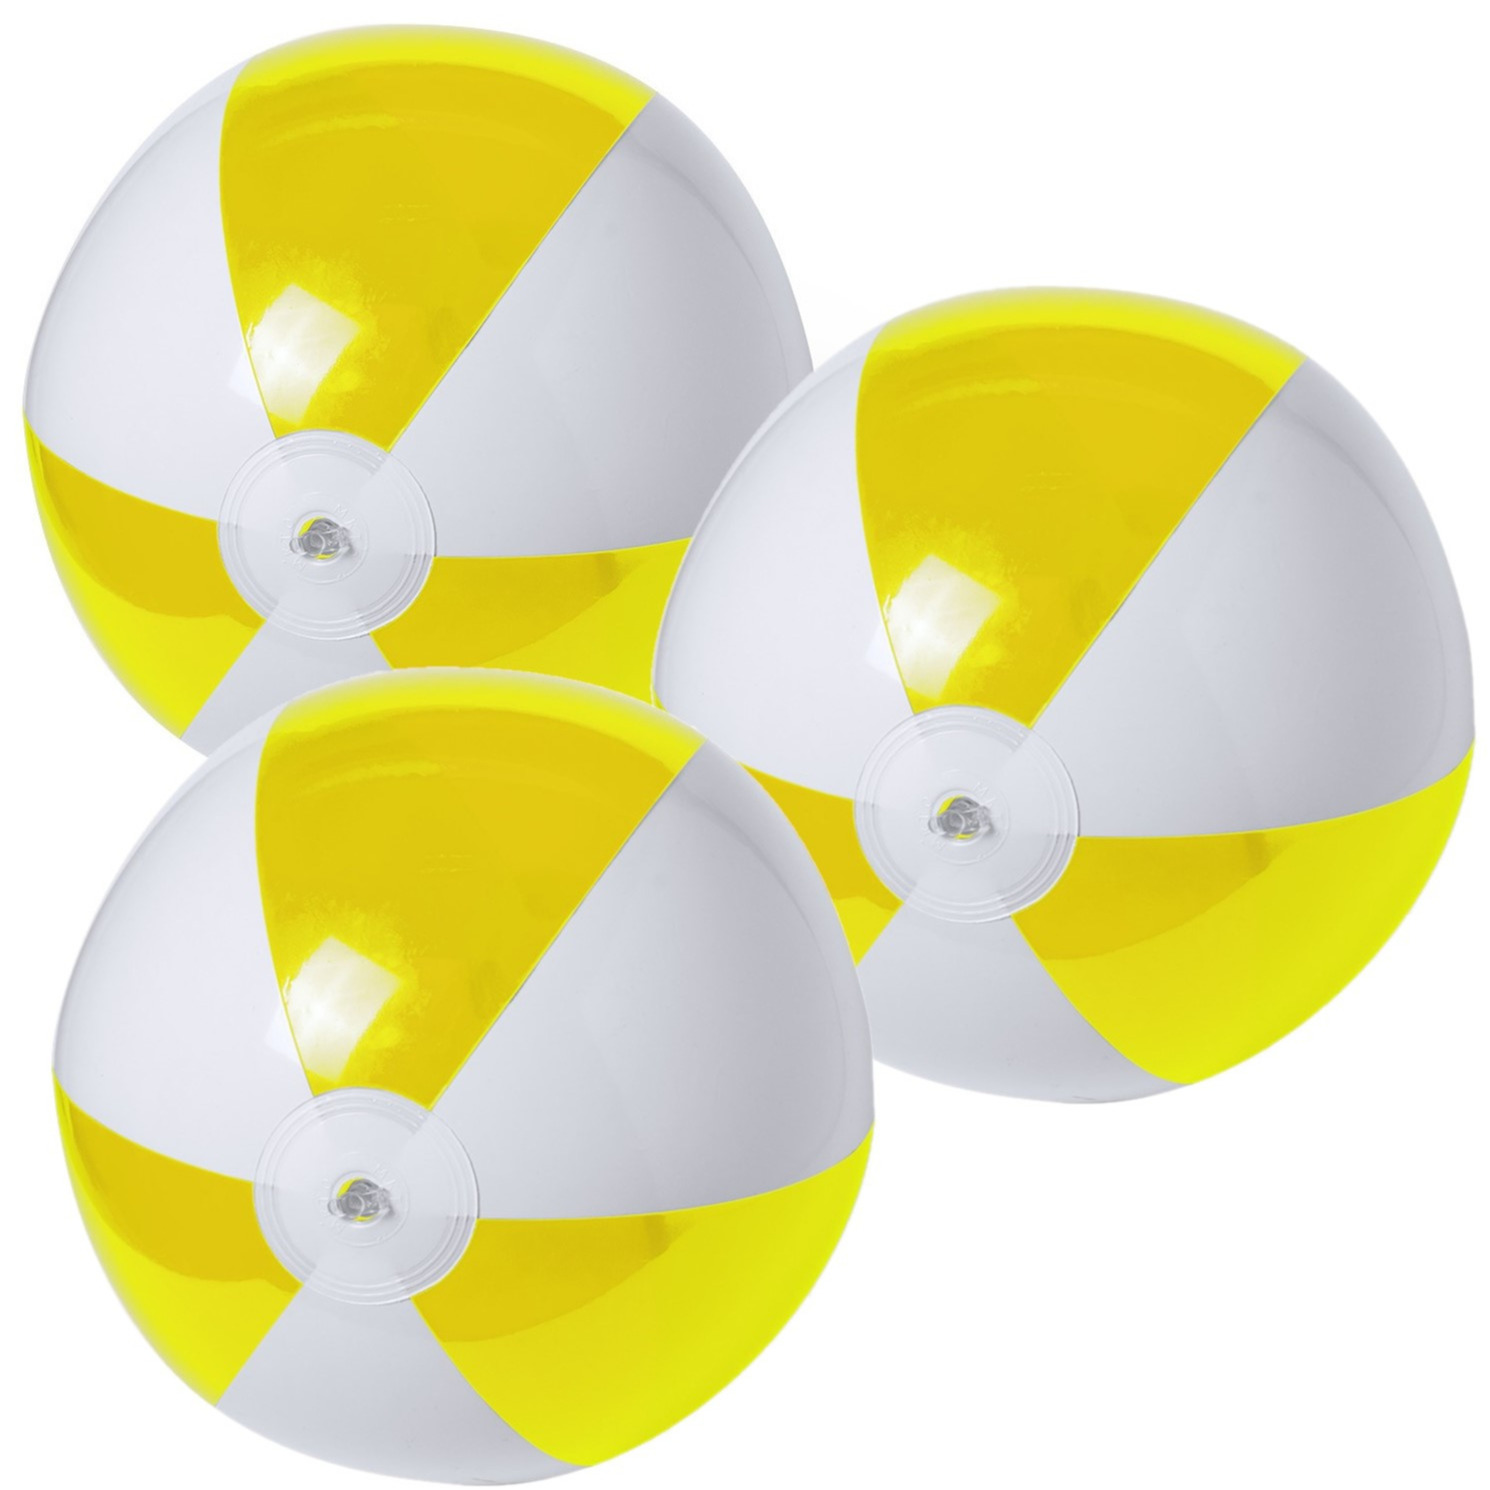 10x stuks opblaasbare strandballen plastic geel-wit 28 cm